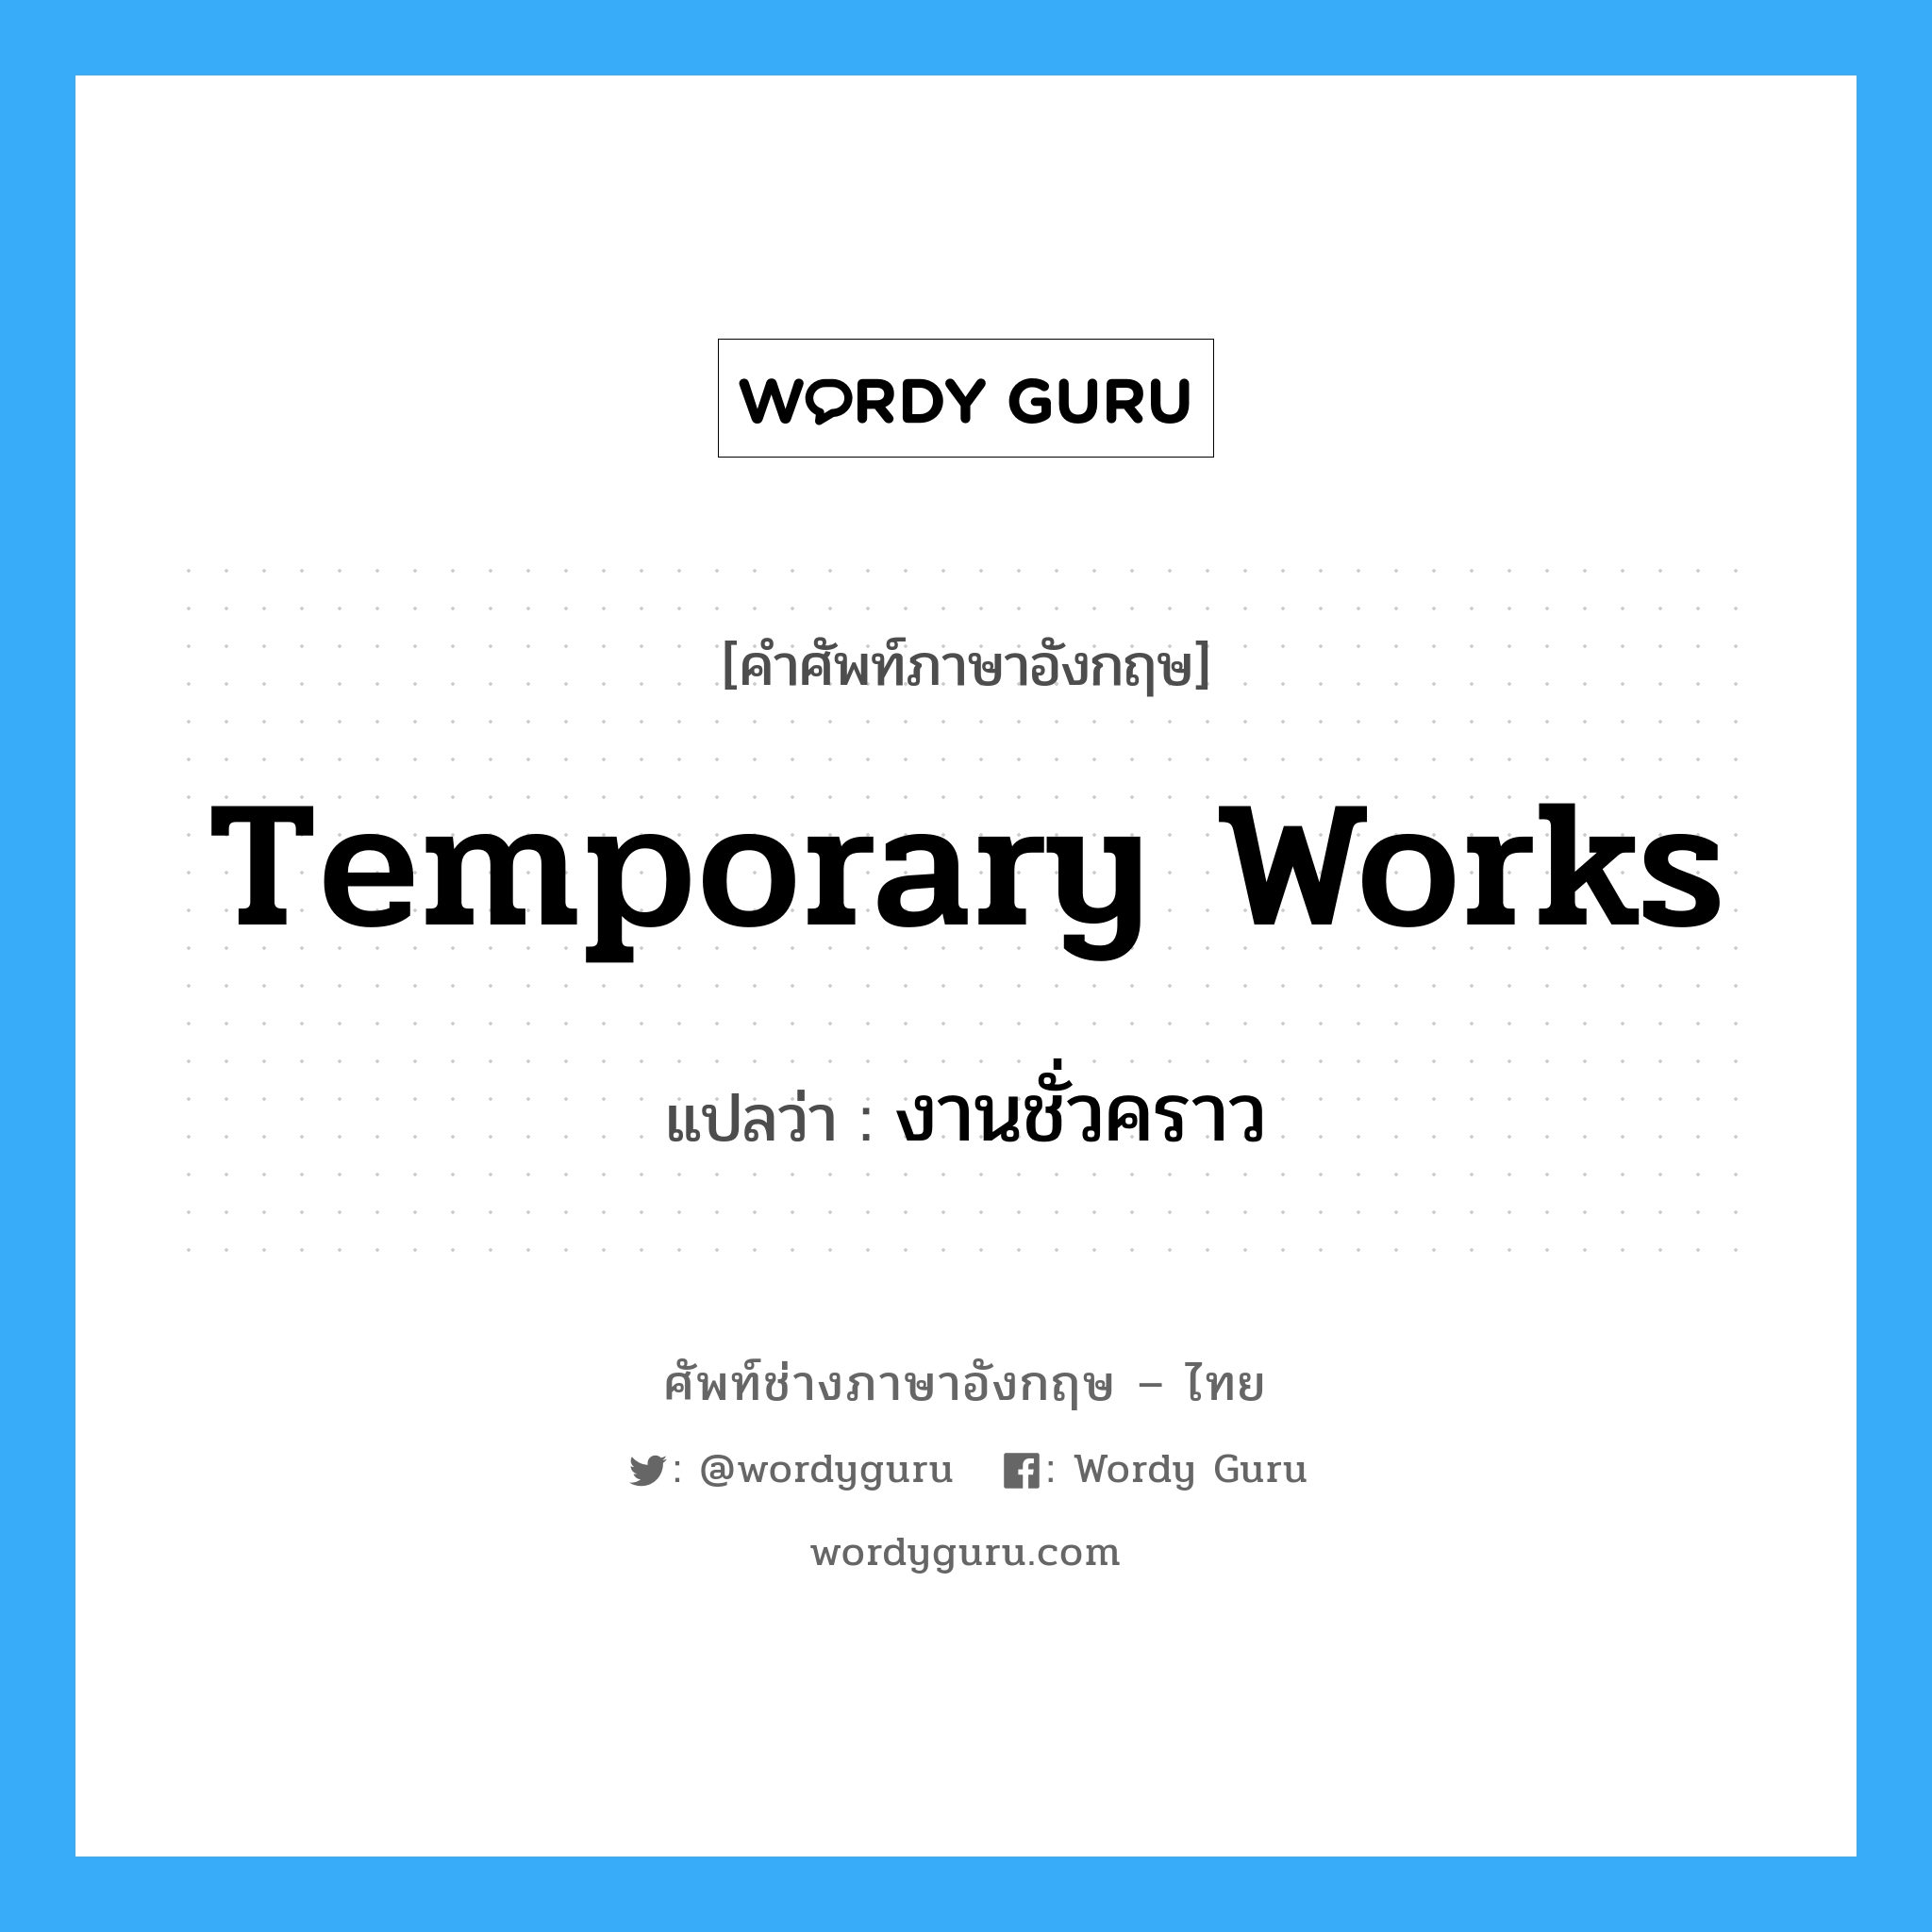 Temporary Works แปลว่า?, คำศัพท์ช่างภาษาอังกฤษ - ไทย Temporary Works คำศัพท์ภาษาอังกฤษ Temporary Works แปลว่า งานชั่วคราว